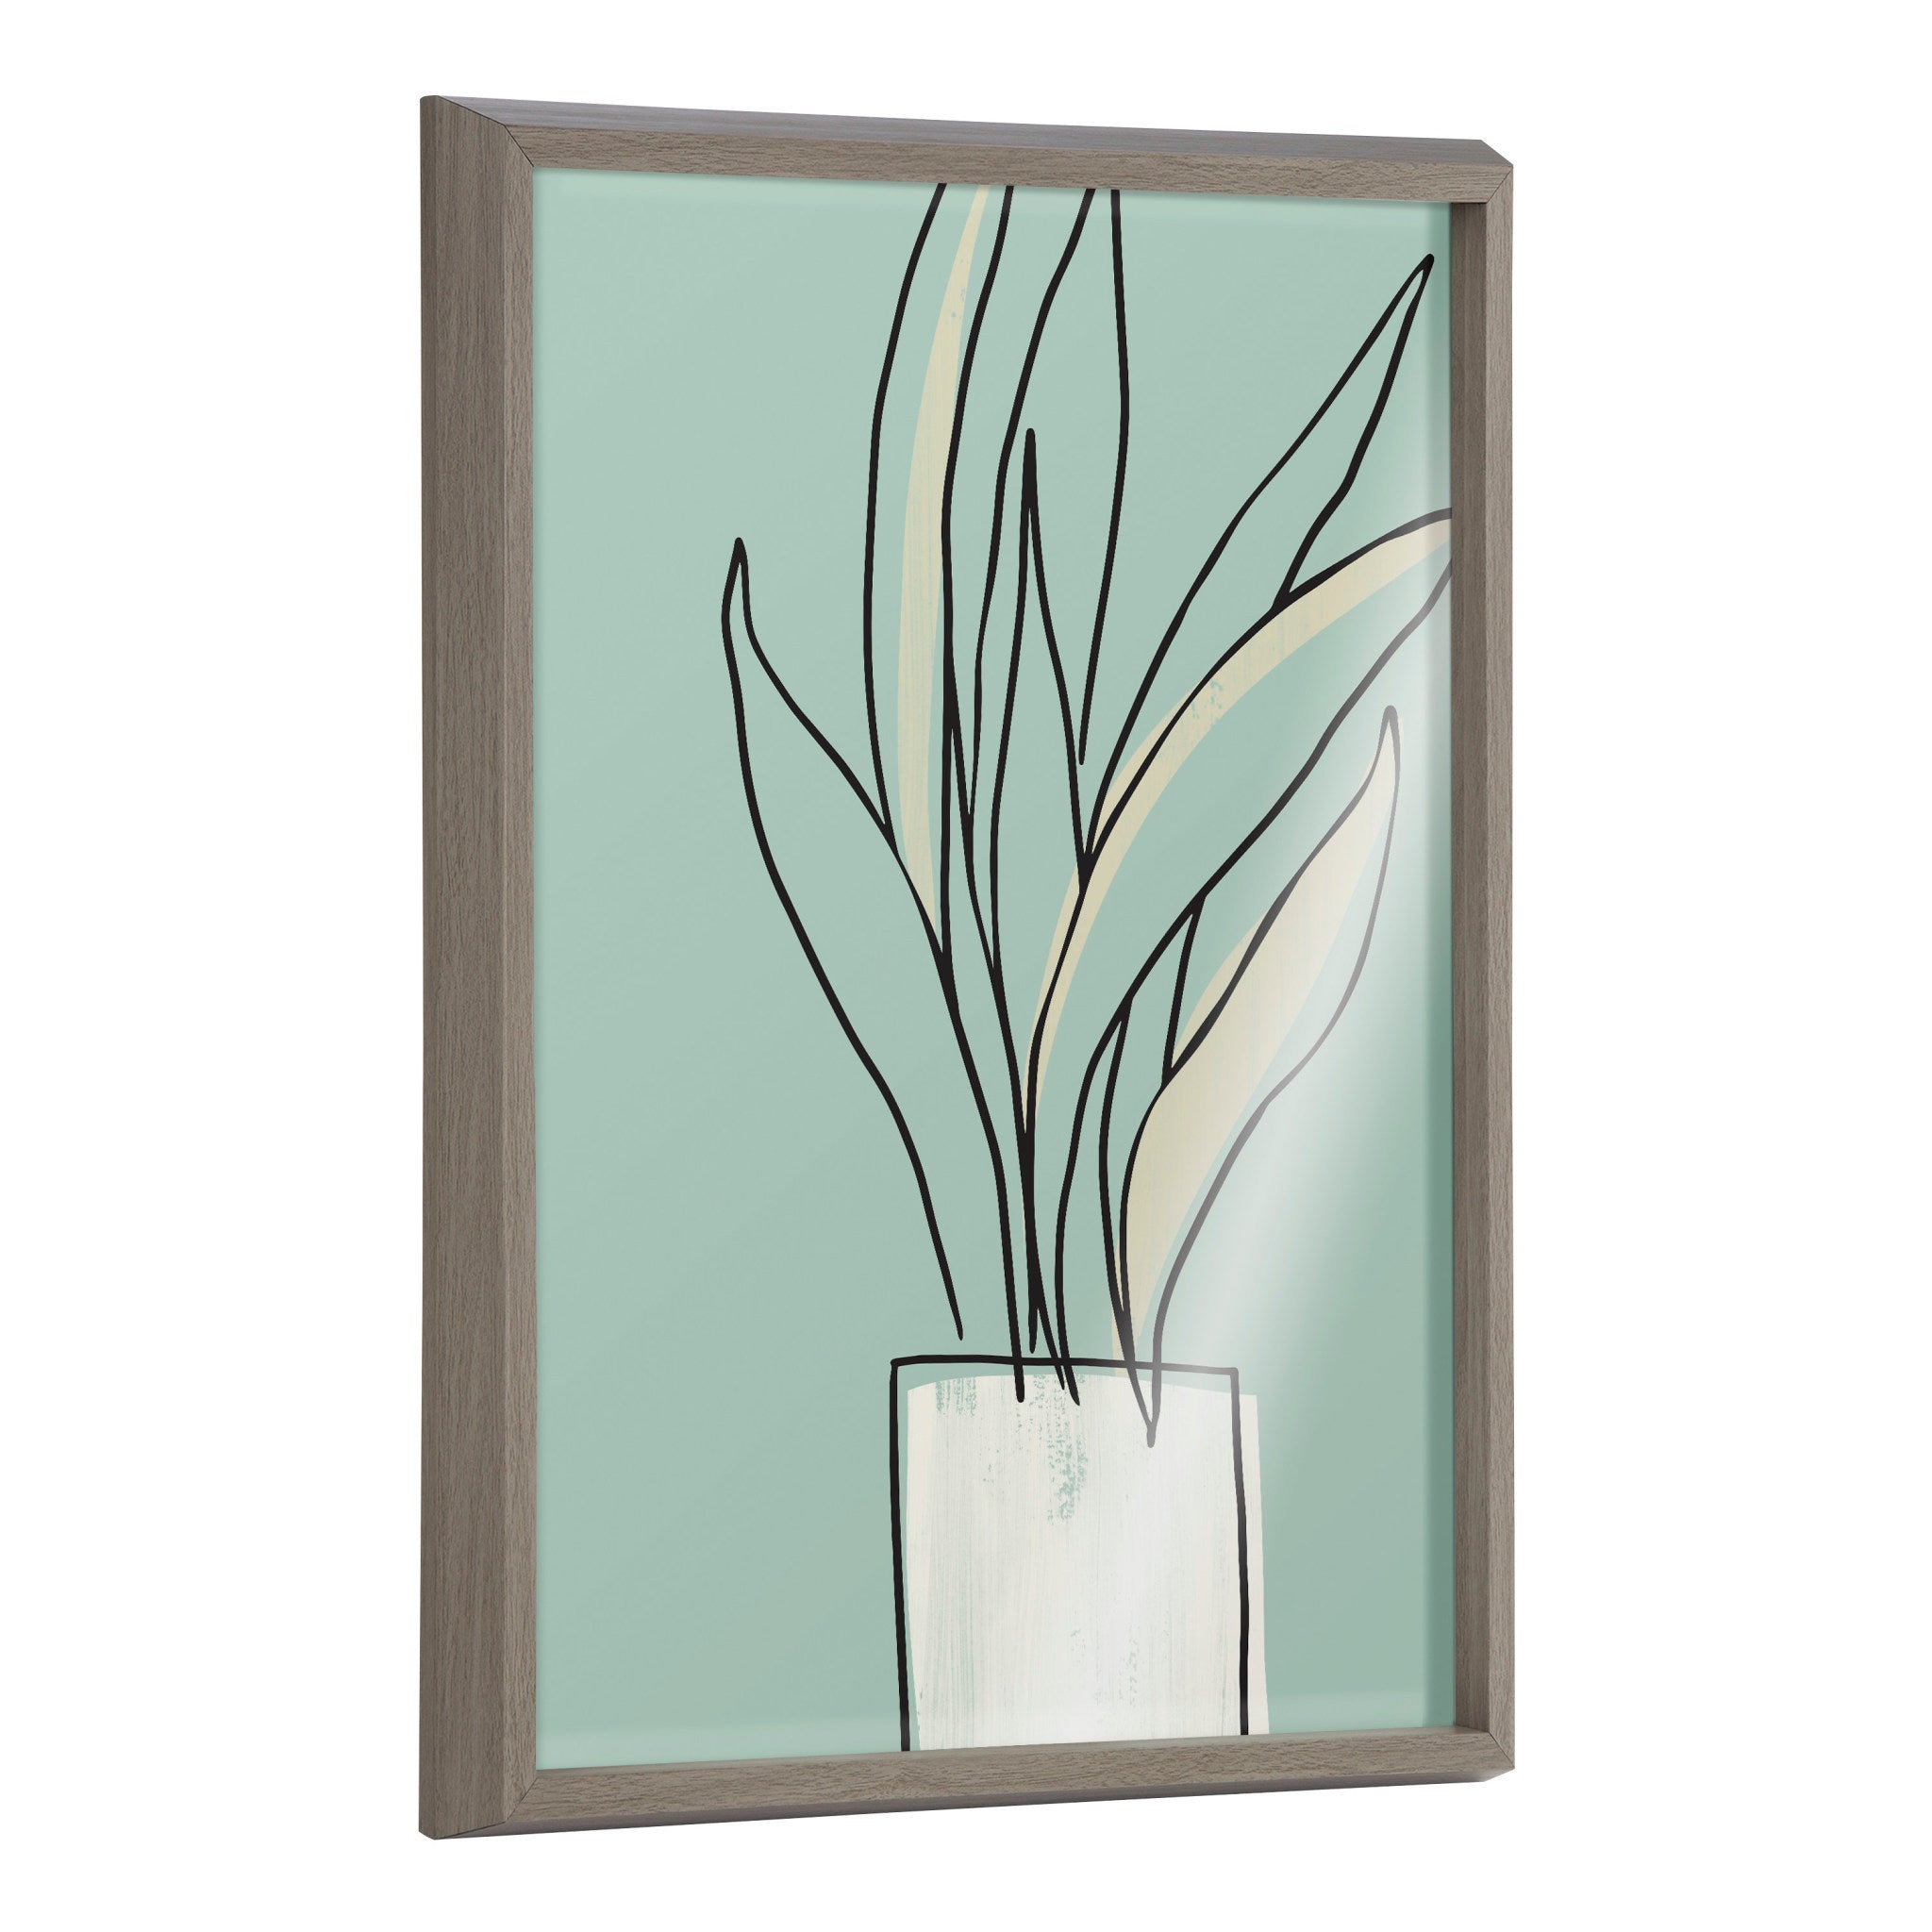 Blake Serene Growth Framed Printed Glass by Elizabeth Silver